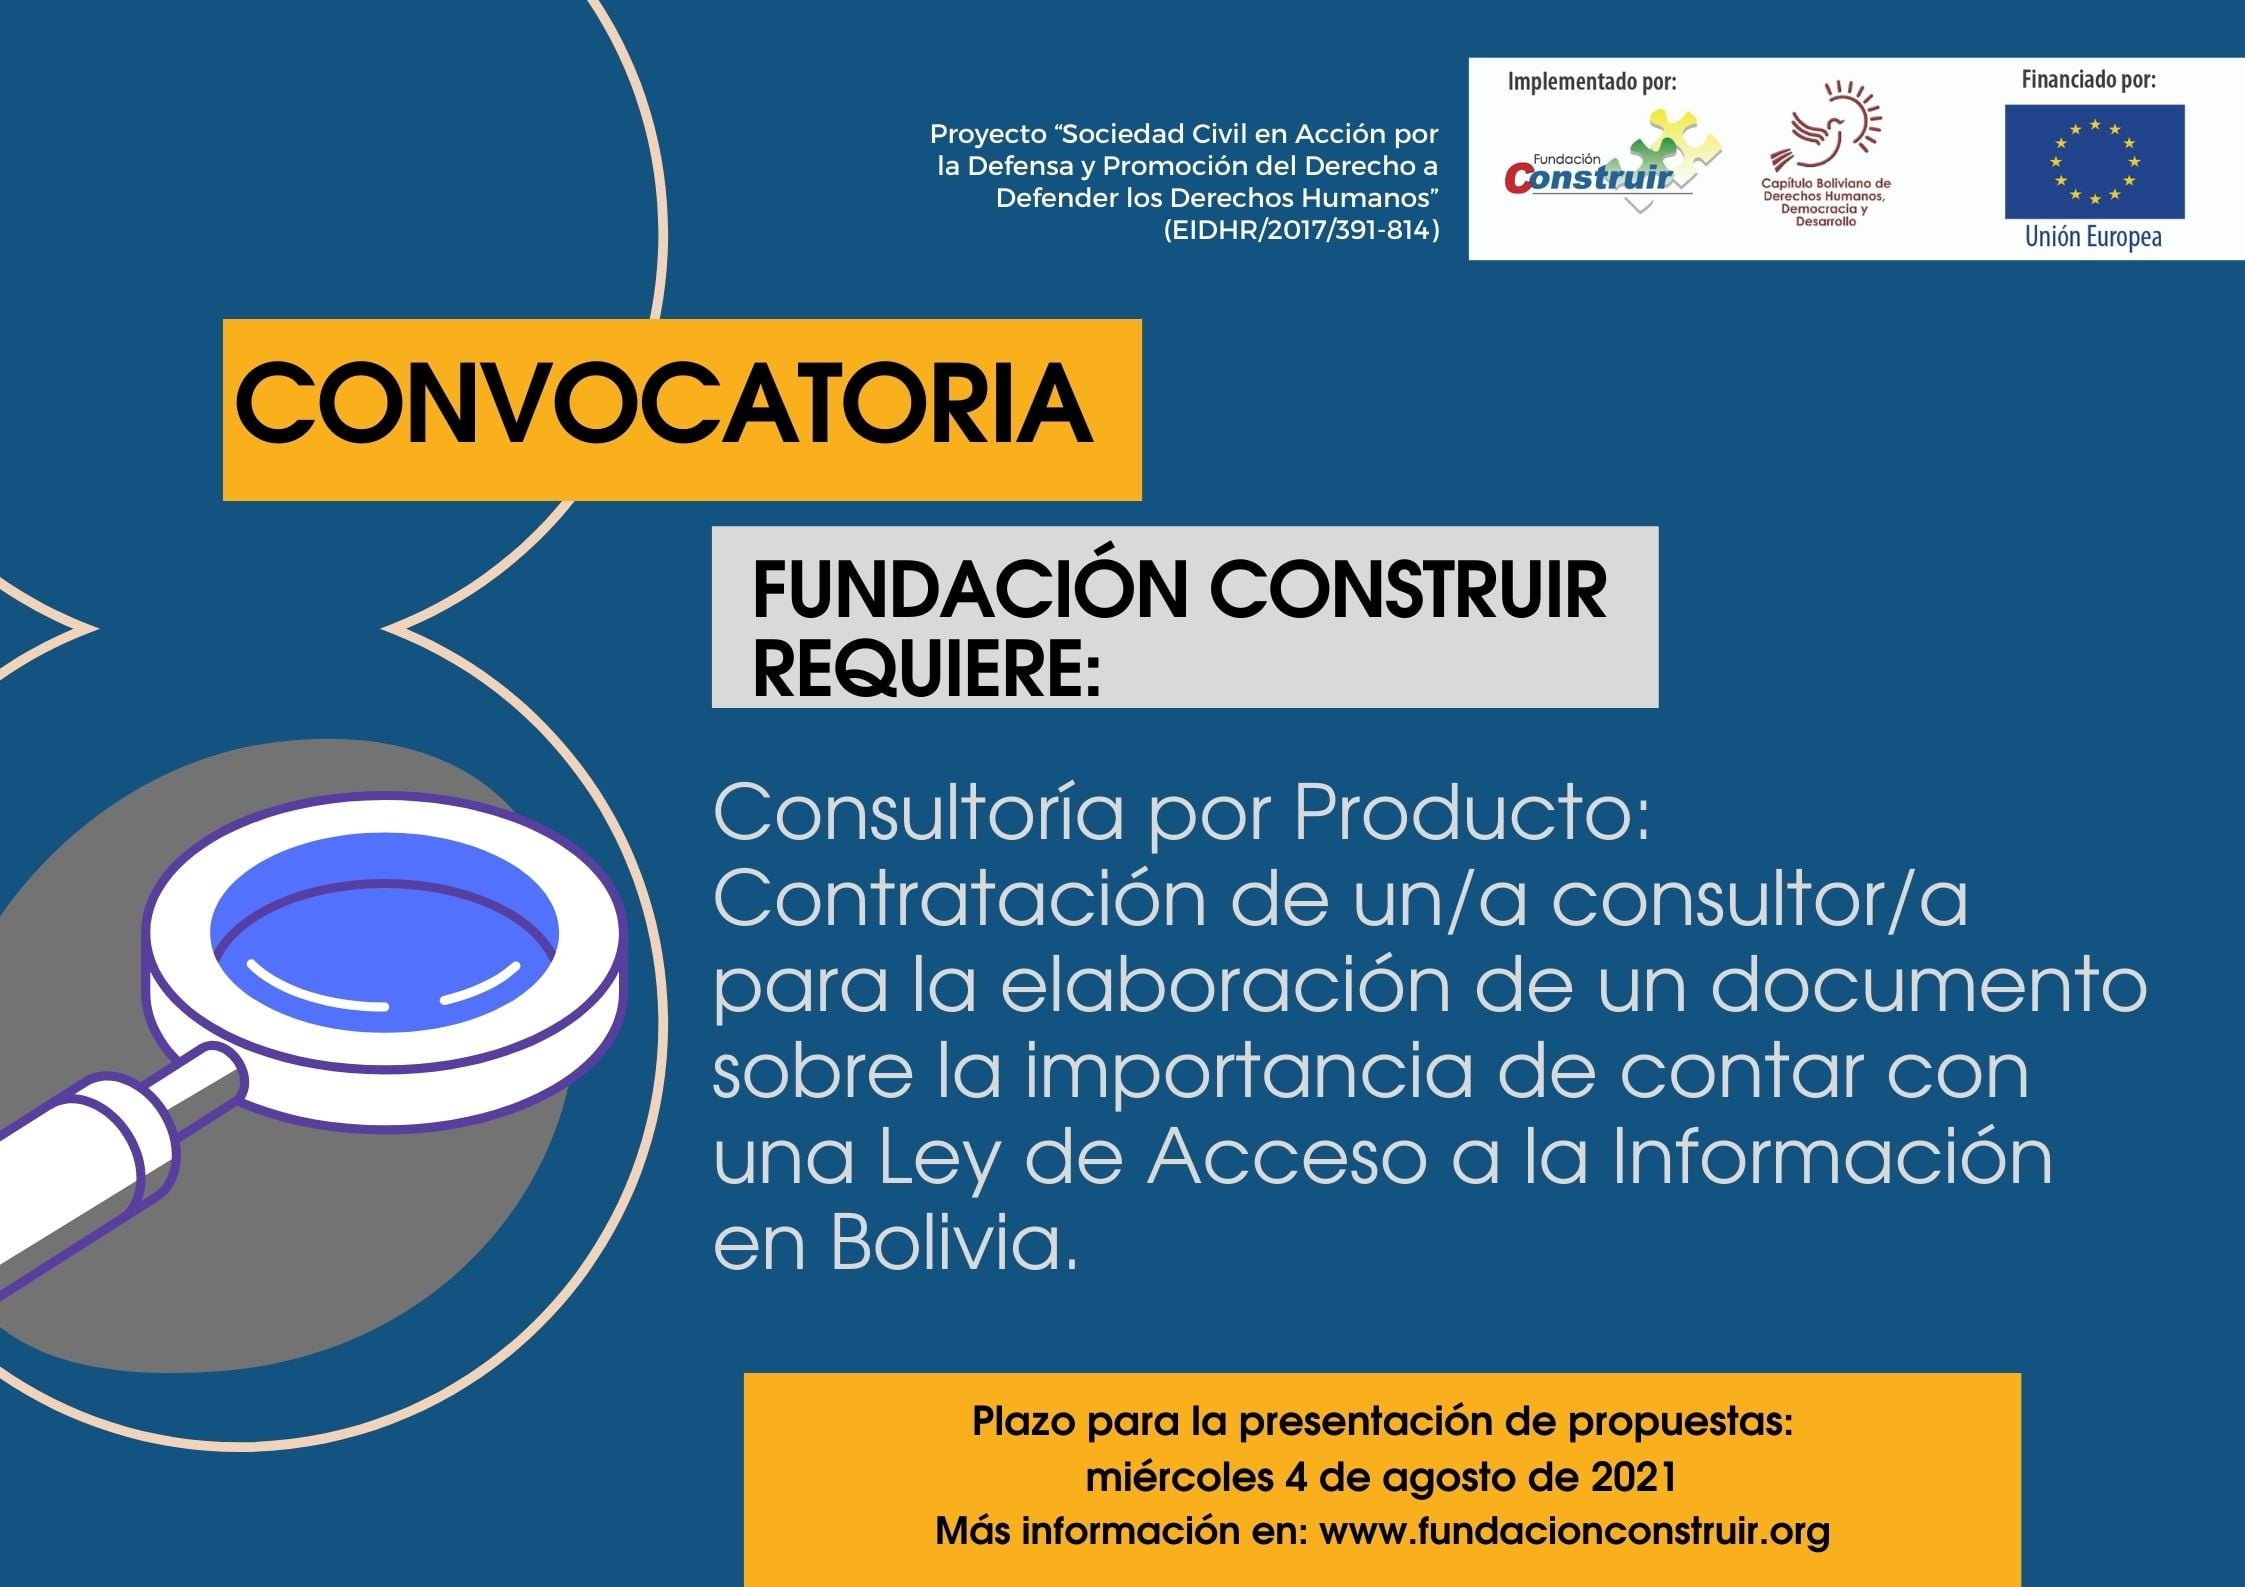 Convocatoria – Contratación de un/a consultor/a para la elaboración de un documento sobre la importancia de contar con una Ley de Acceso a la Información en Bolivia